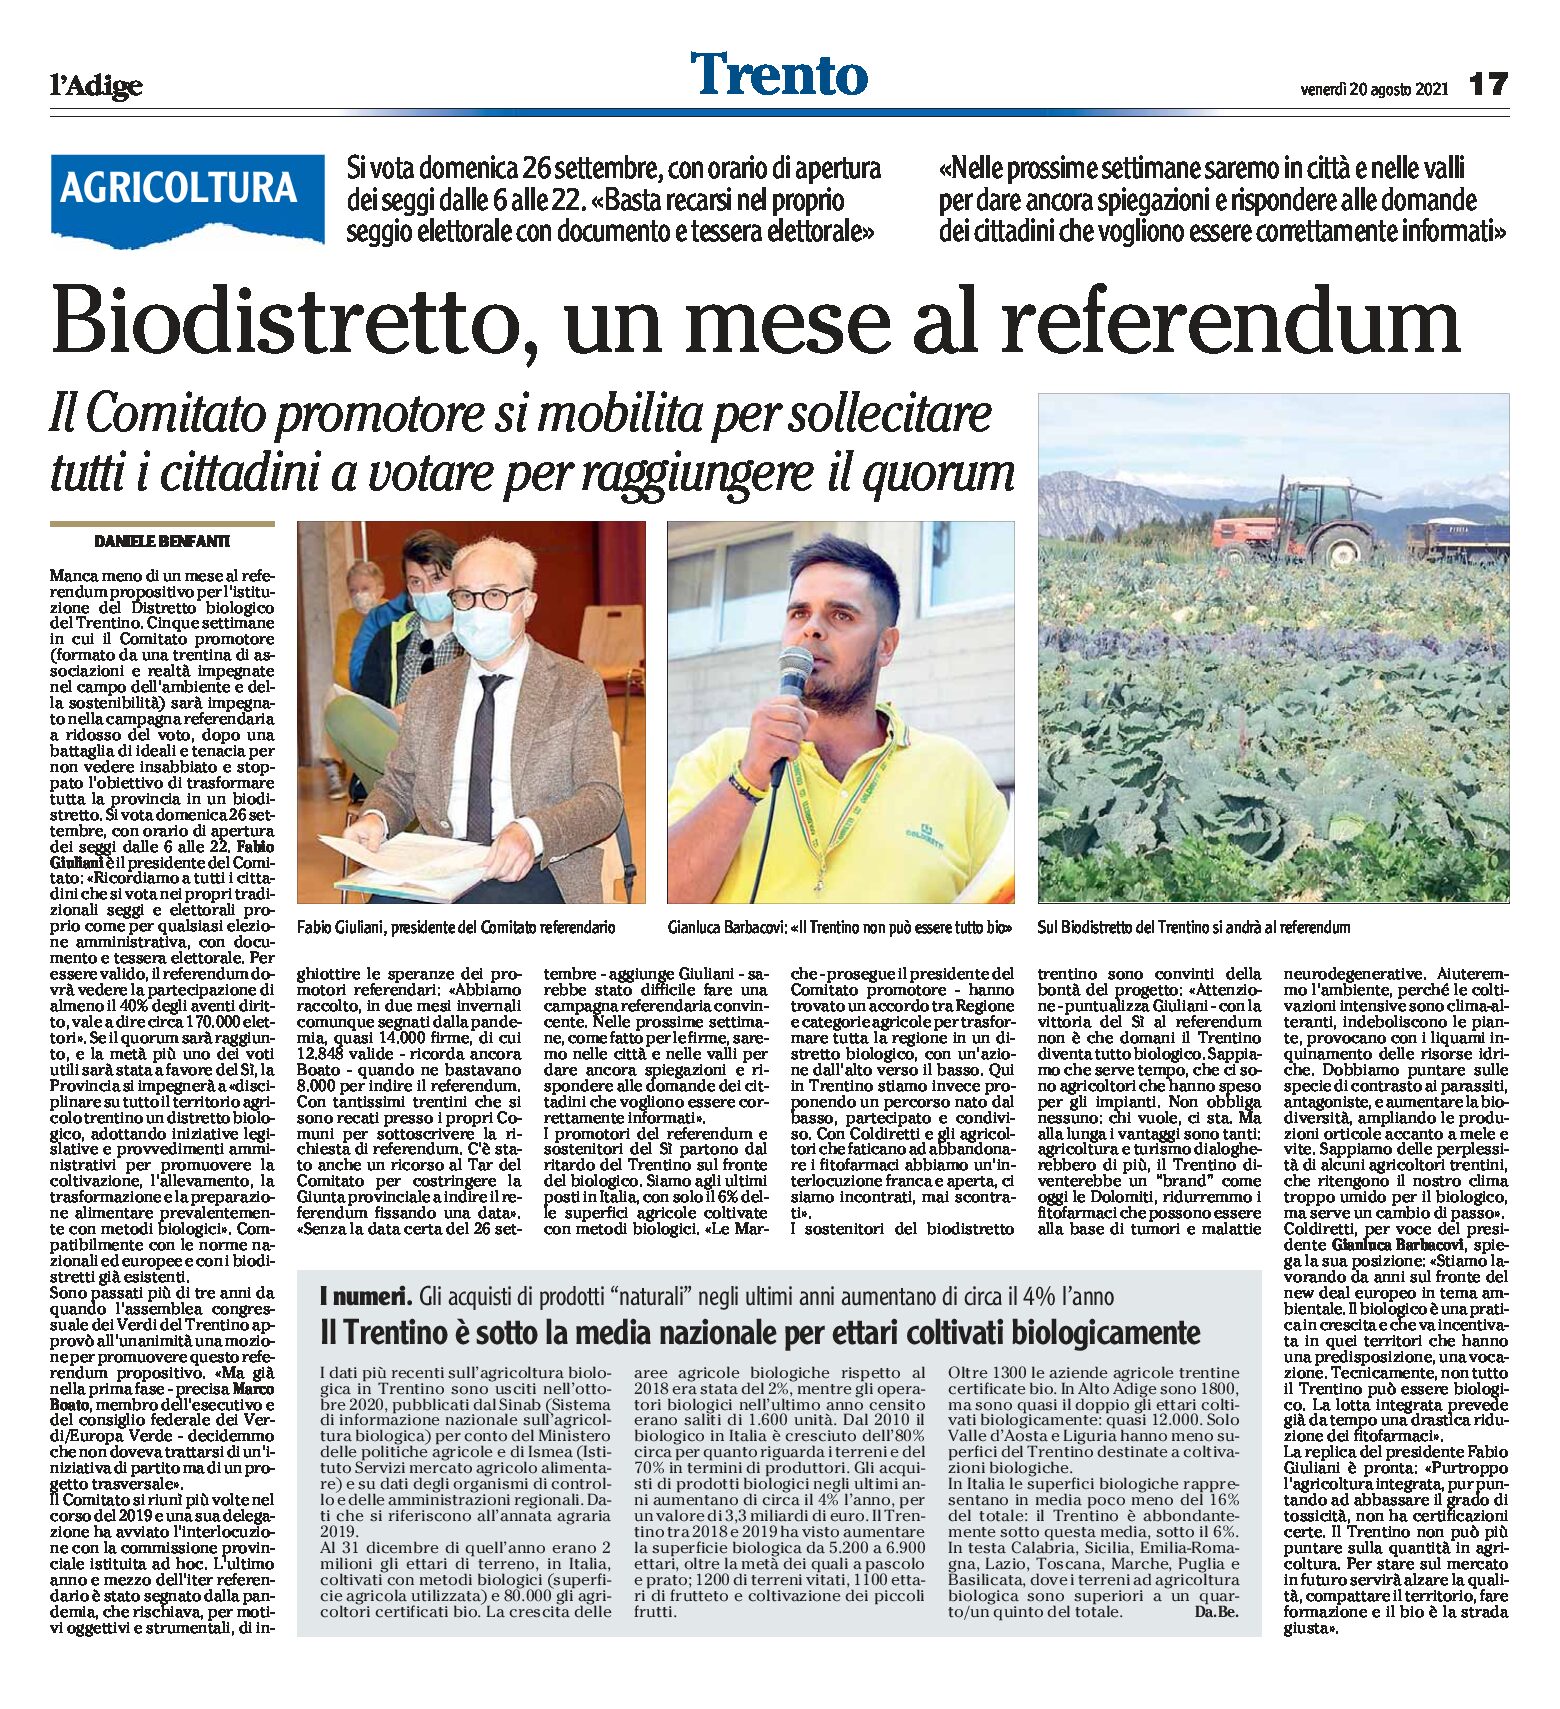 Trentino, Biodistretto: un mese al referendum